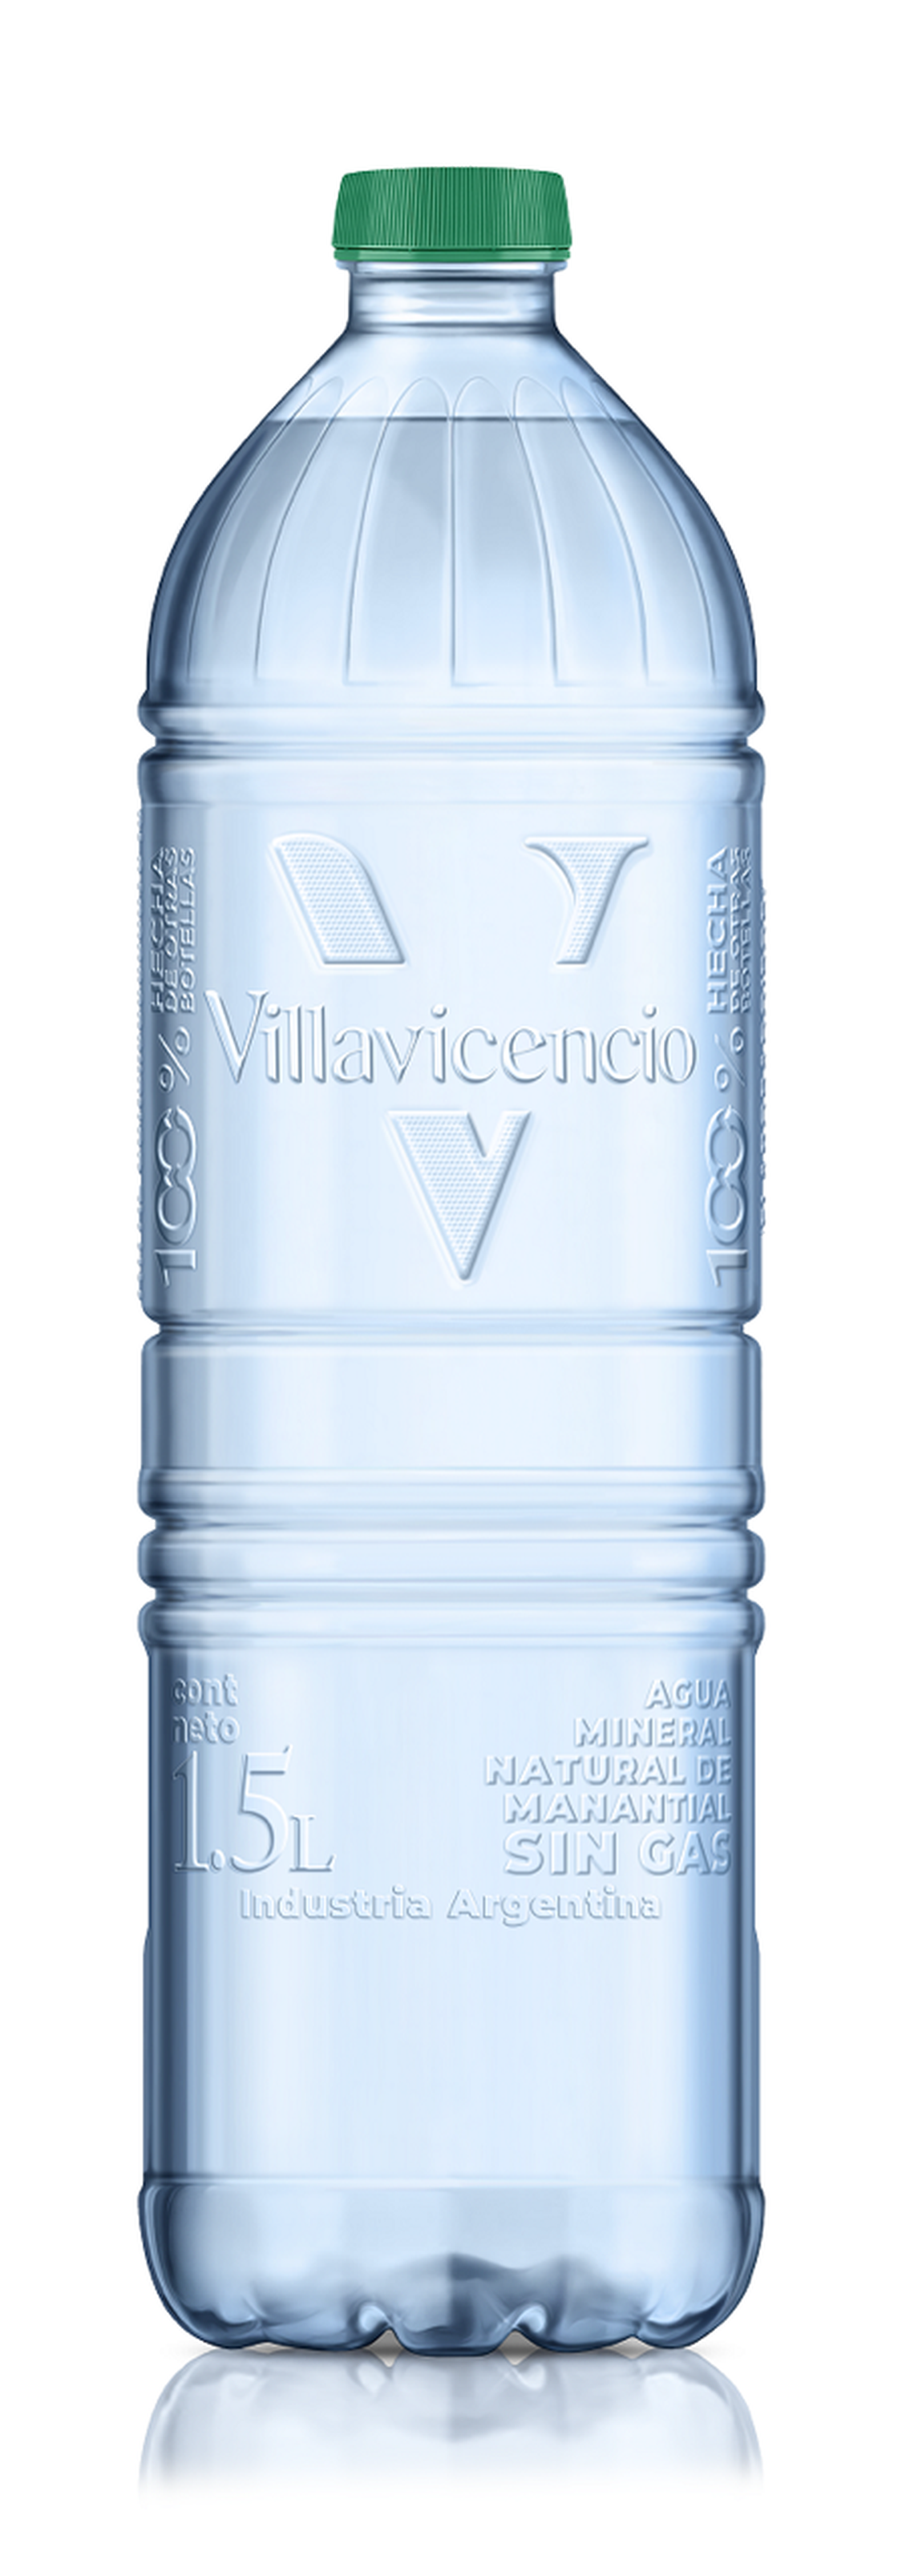 Villavicencio presenta la primera botella hecha 100% de otras botellas